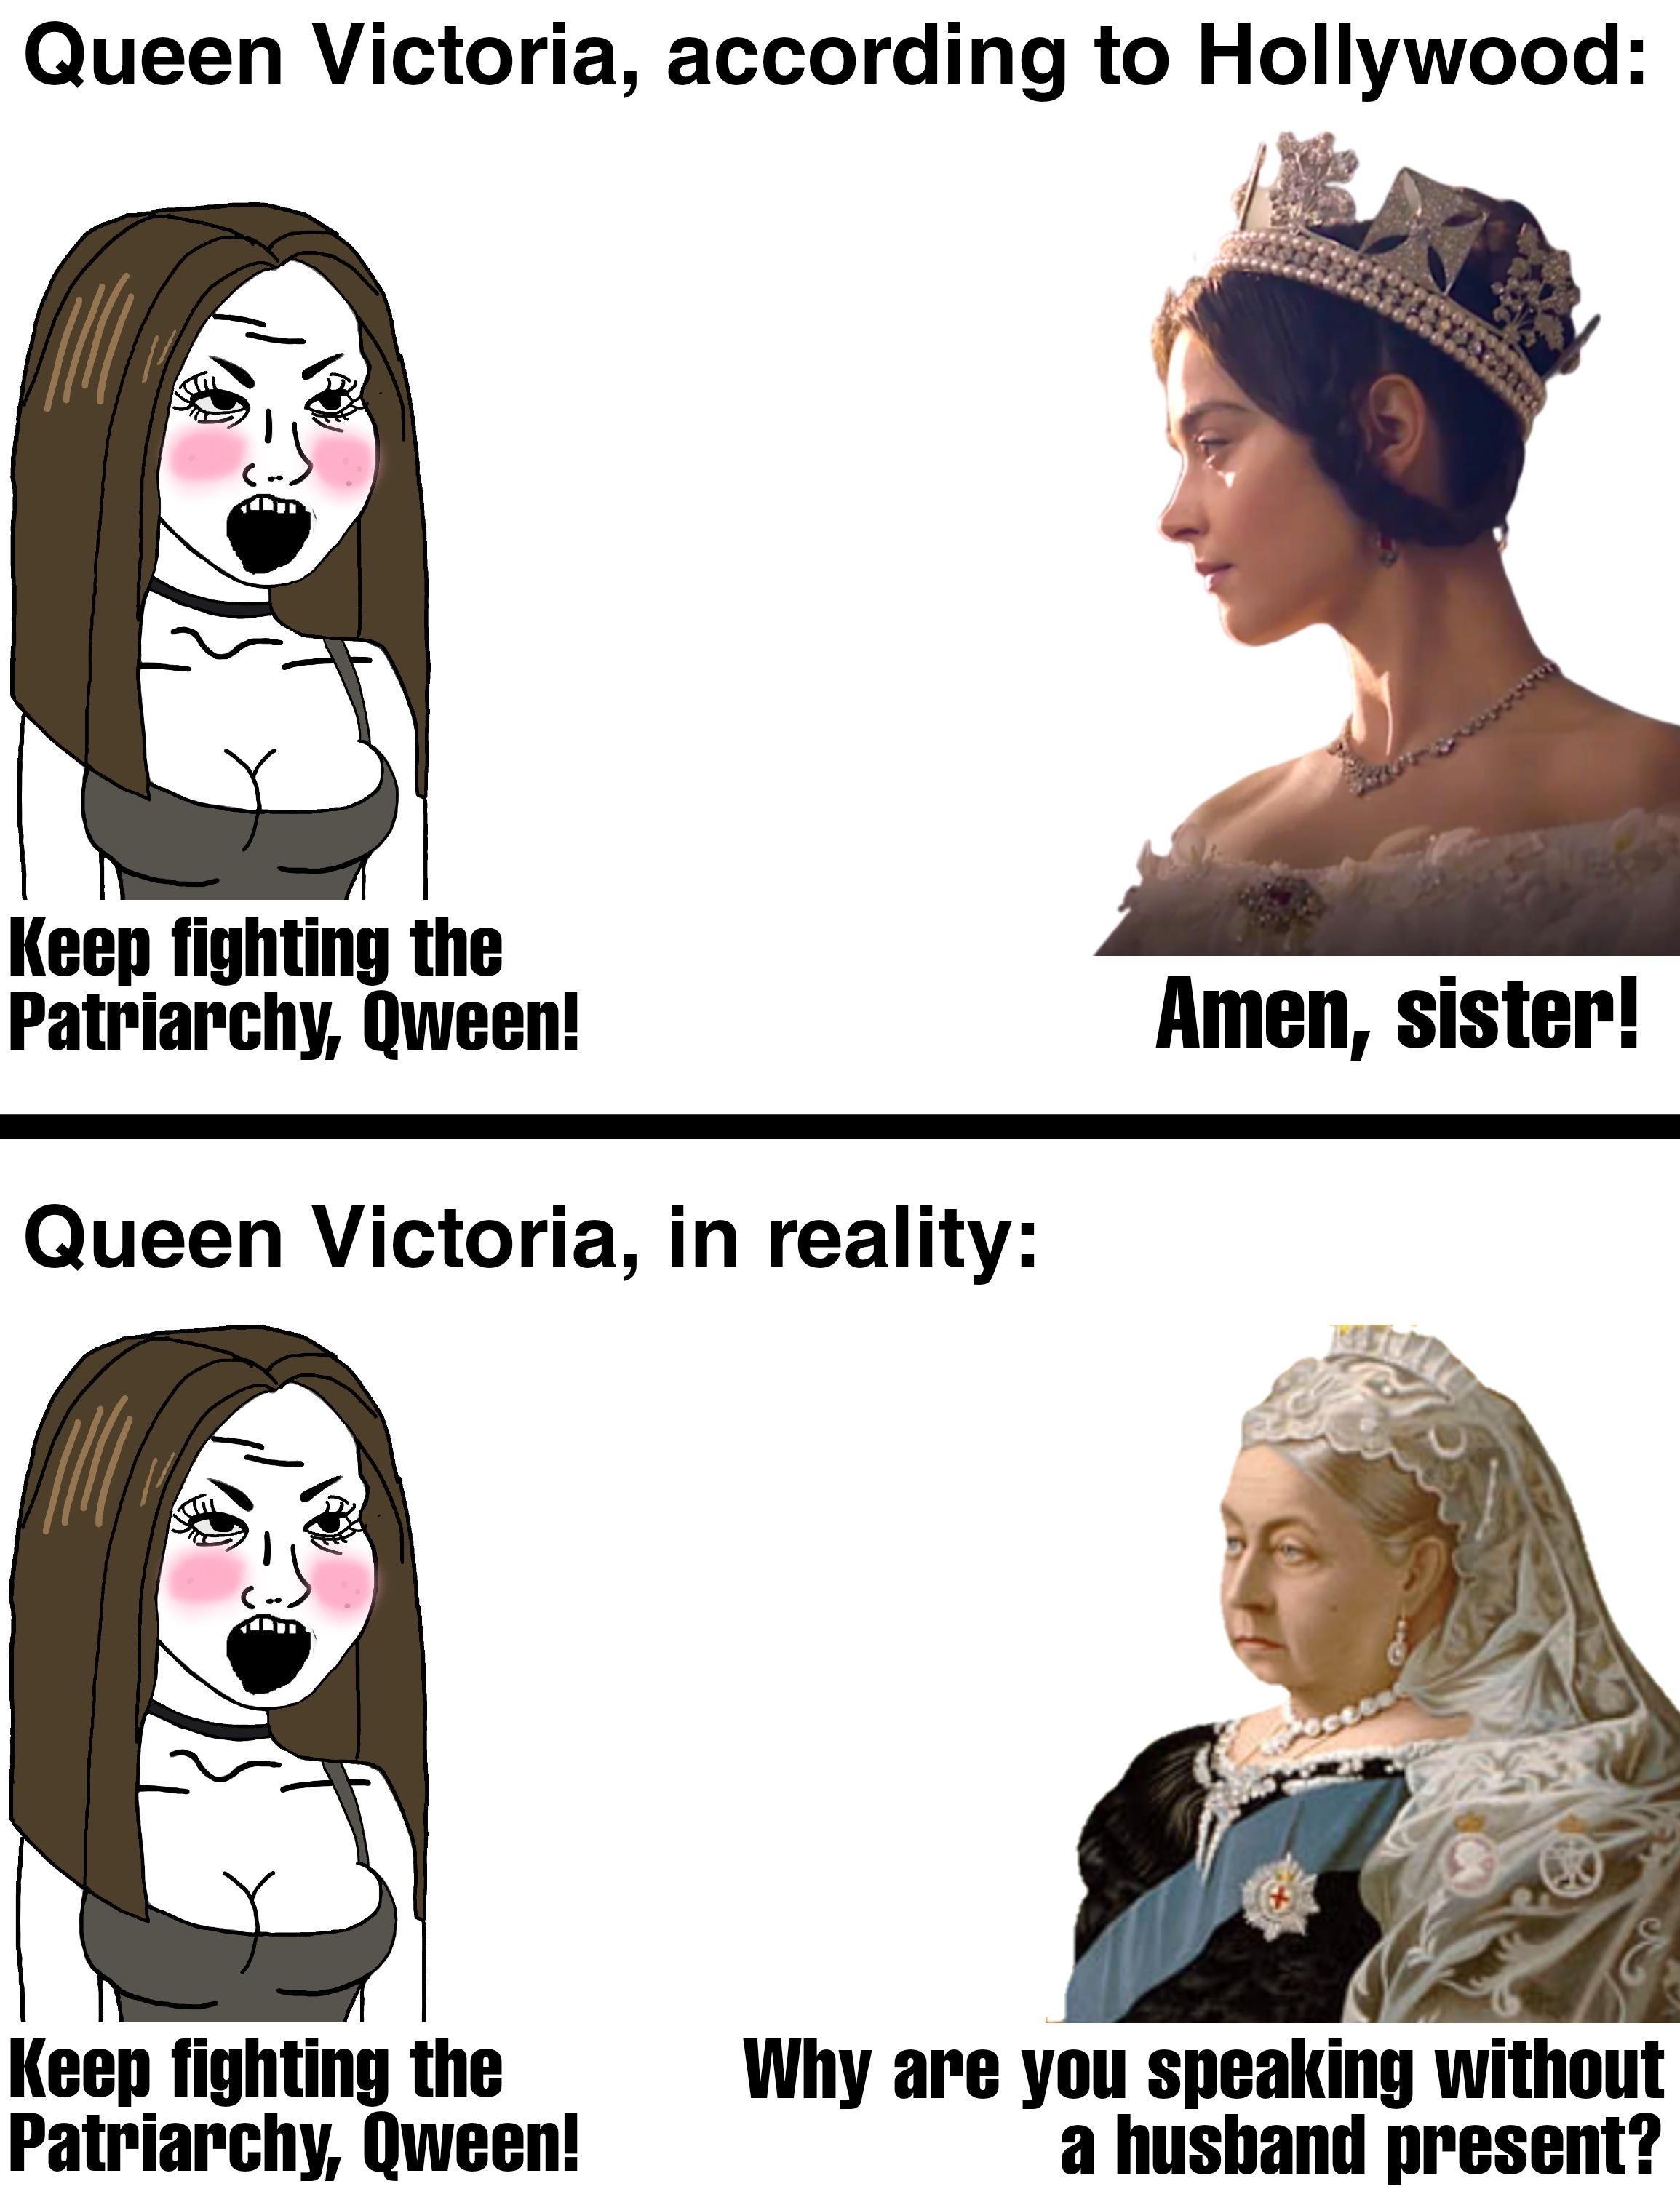 Queen Victoria was halal.